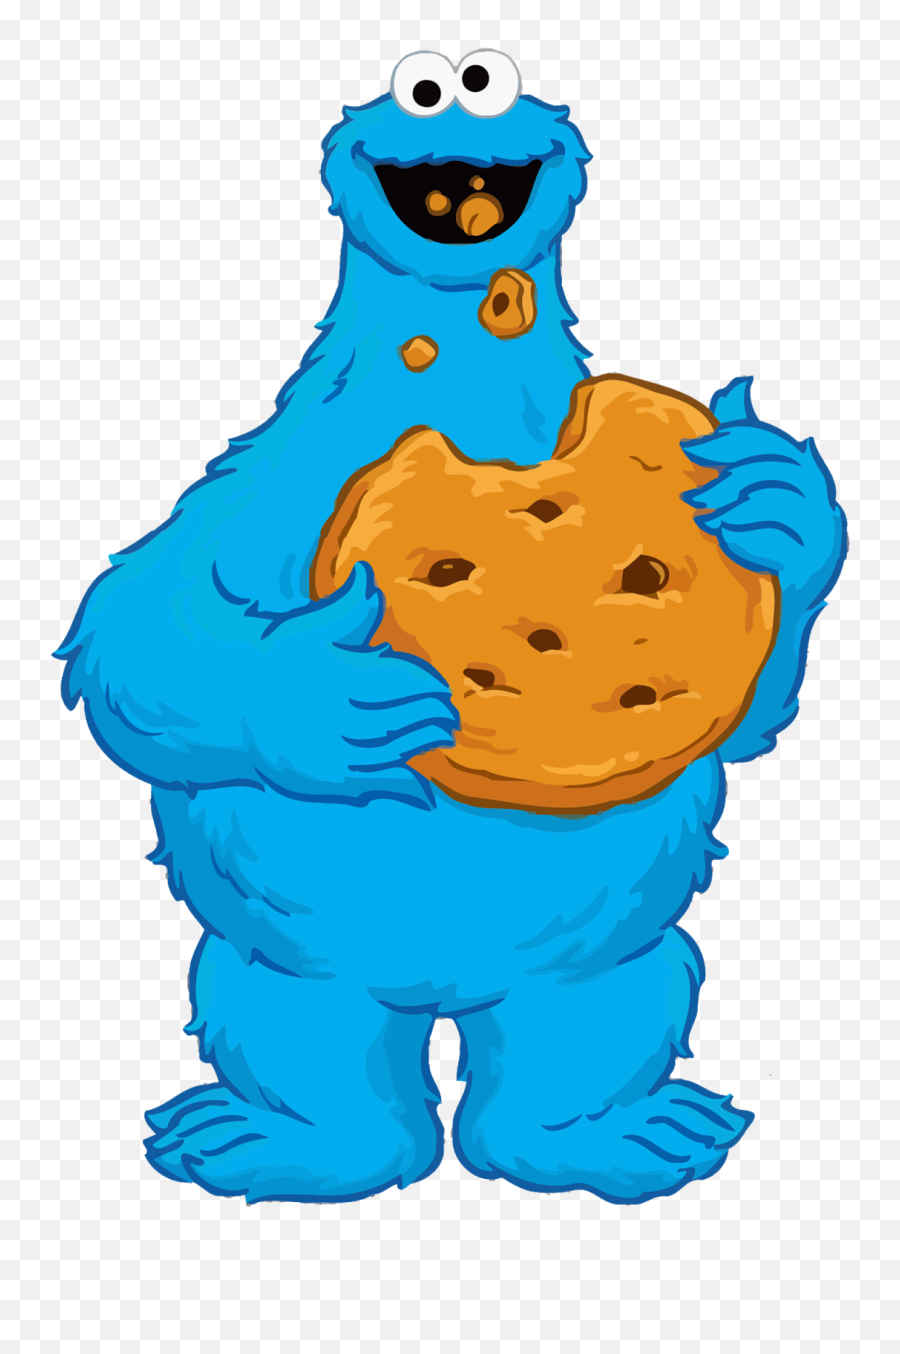 Download Printable Cookie Monster - Cookie Monster Cartoon Transparent Emoji,Cookie Emoji Free Printable